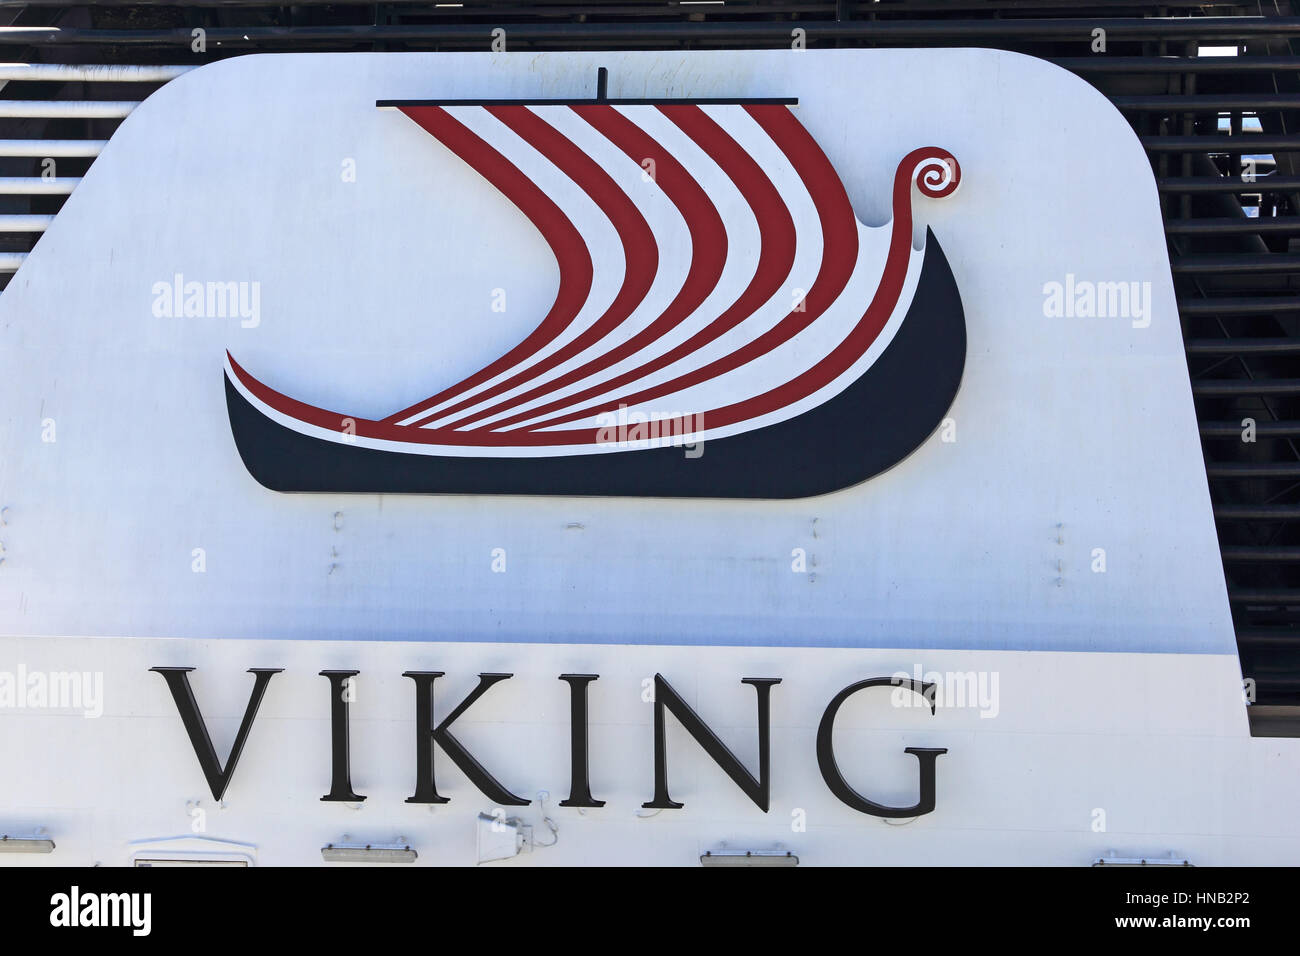 Croisières Viking logo sur côté de Viking Star bateau de croisière. Banque D'Images